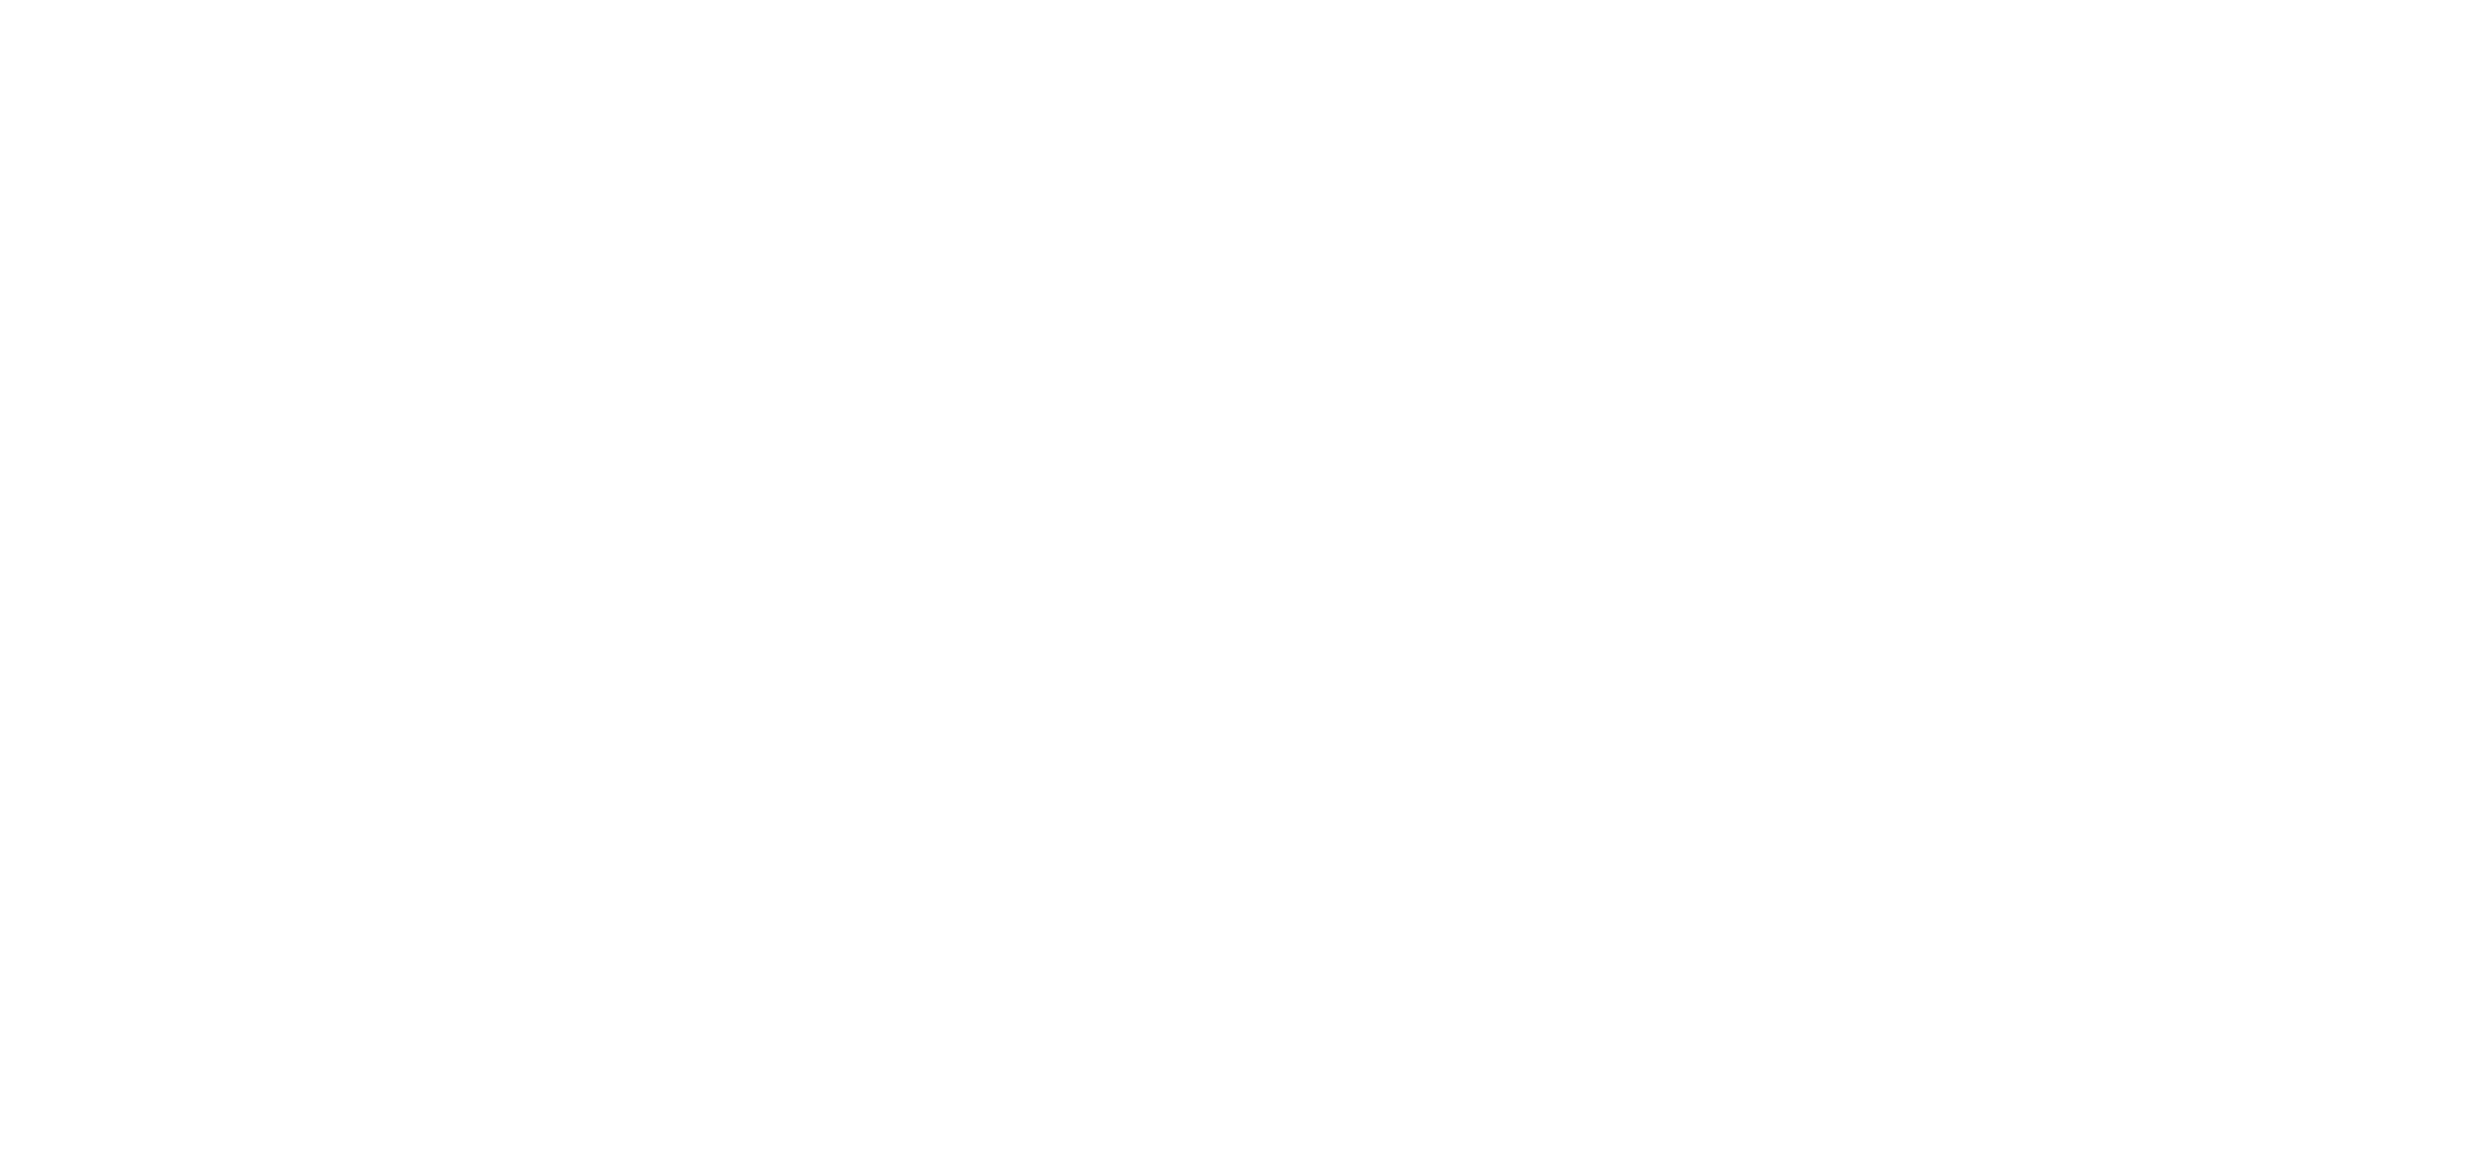 Logo VTE